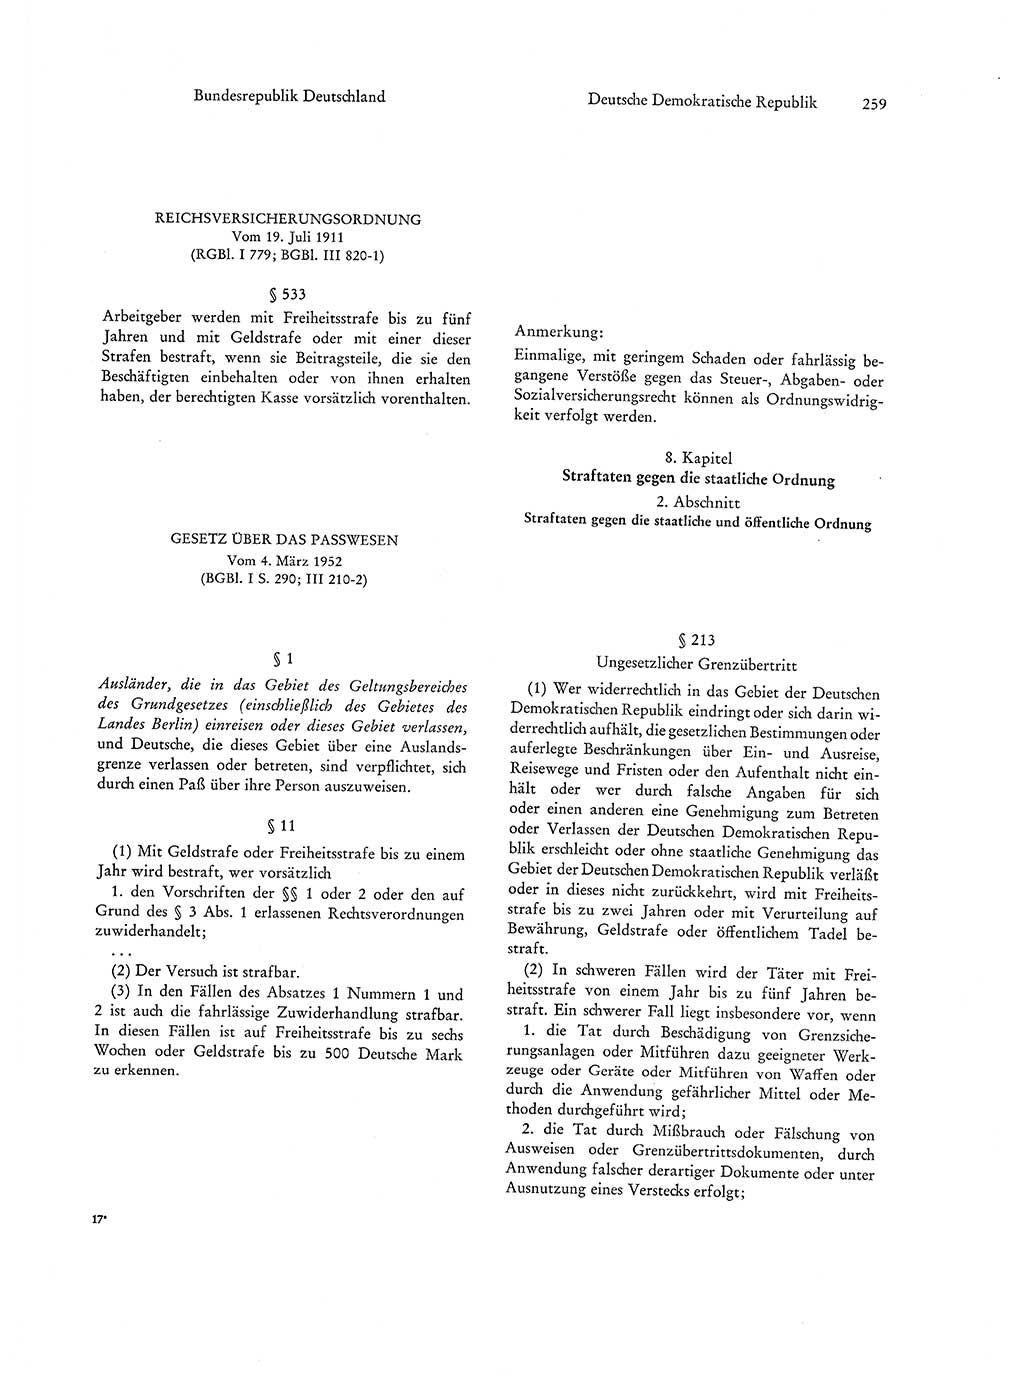 Strafgesetzgebung in Deutschland [Bundesrepublik Deutschland (BRD) und Deutsche Demokratische Republik (DDR)] 1972, Seite 259 (Str.-Ges. Dtl. StGB BRD DDR 1972, S. 259)